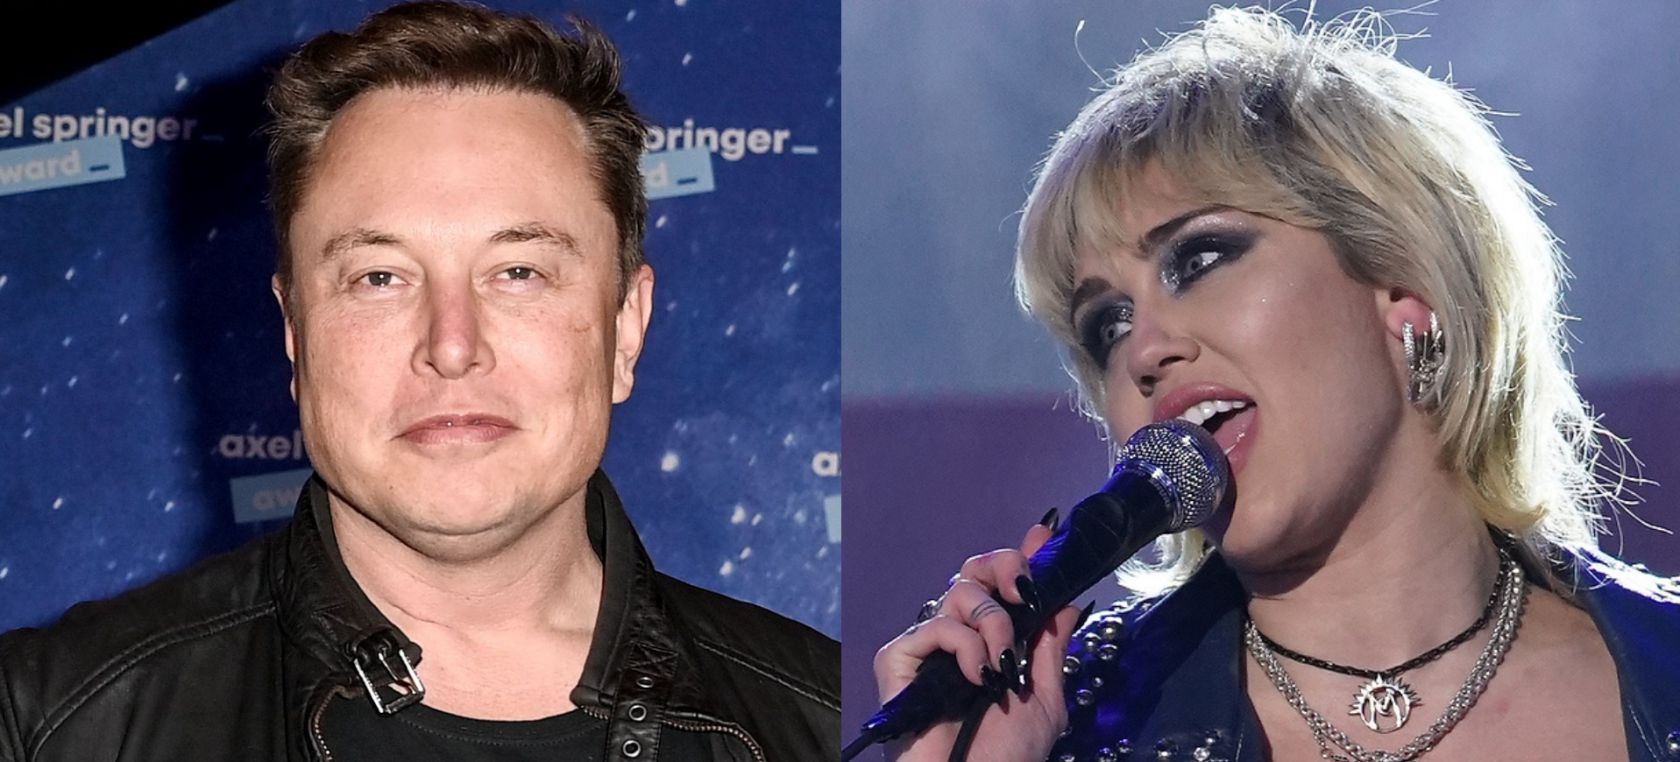 Elon Musk en la presentación de Tesla / Miley Cyrus en Nochevieja de 2021